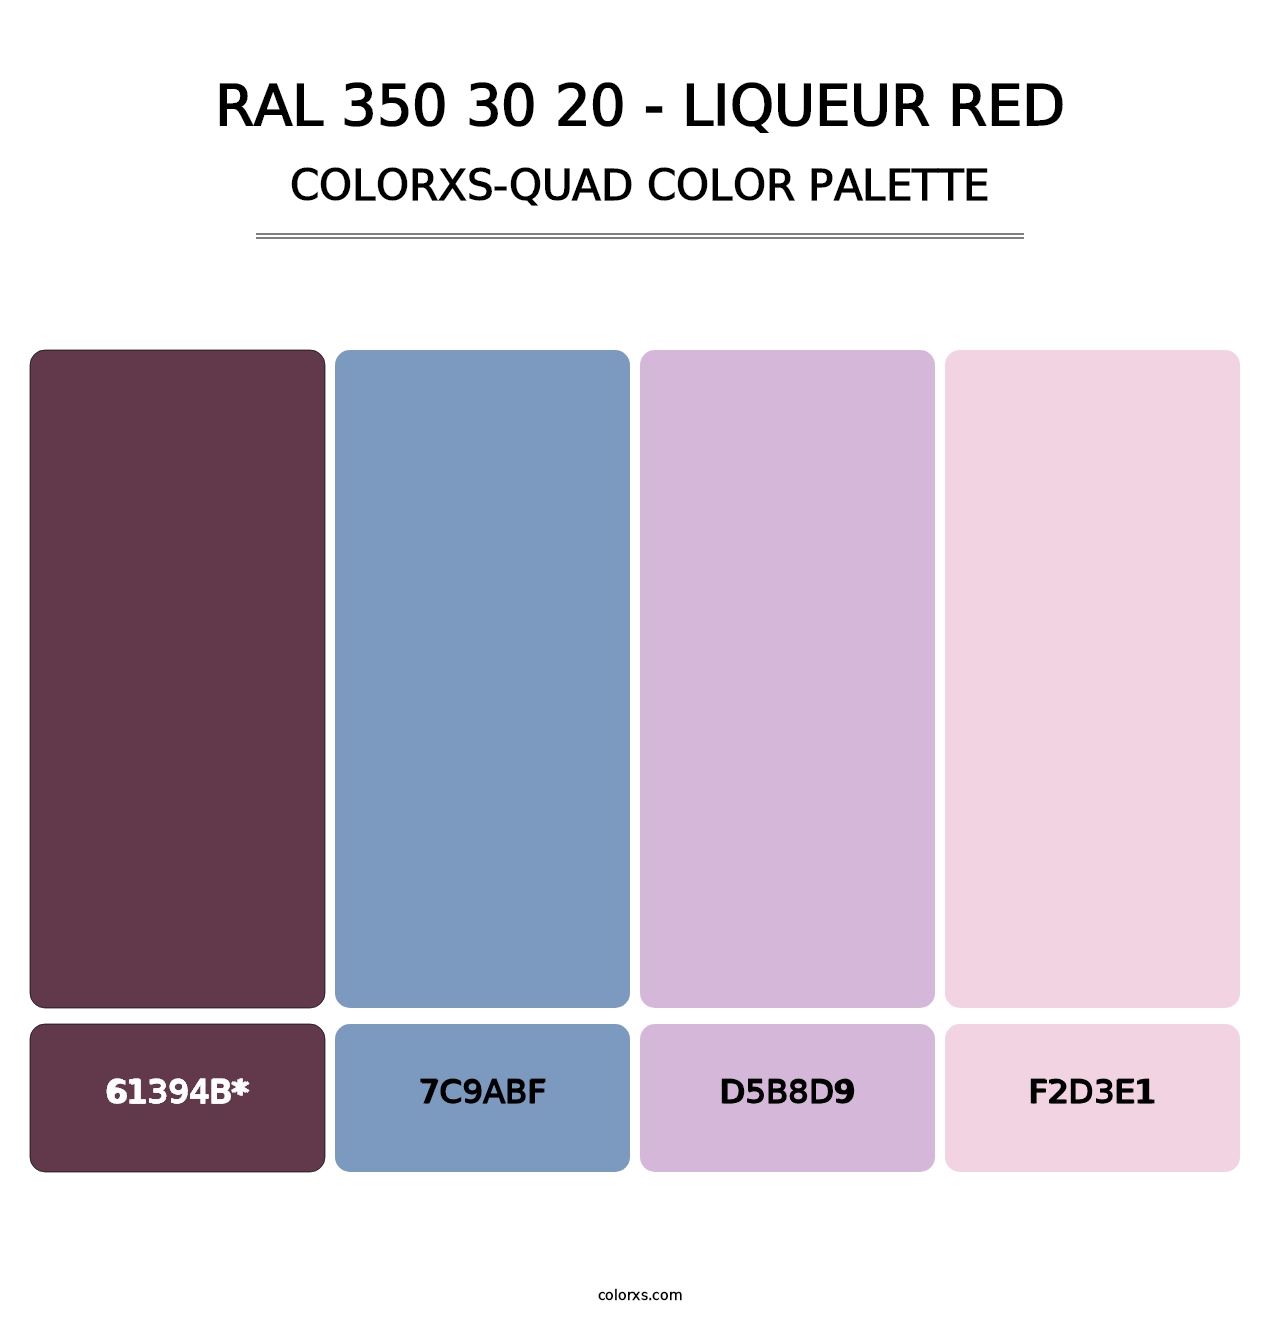 RAL 350 30 20 - Liqueur Red - Colorxs Quad Palette